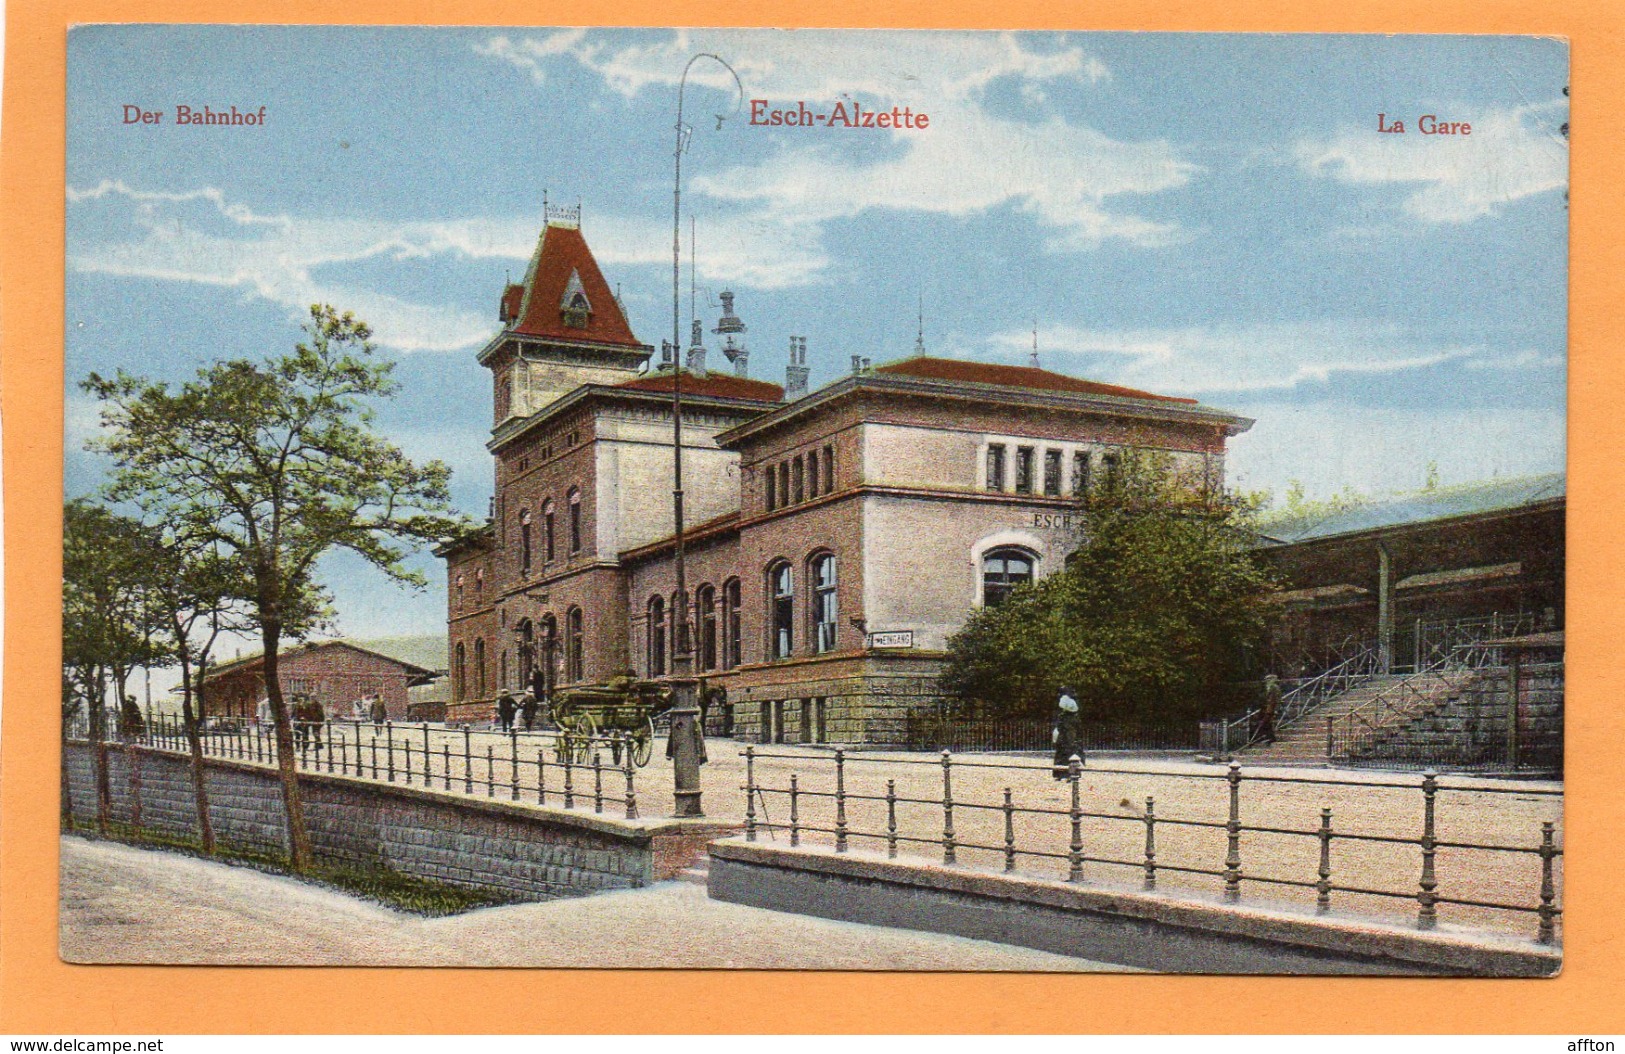 Esch Alzette Bahnhof Luxembourg 1907 Postcard - Esch-Alzette